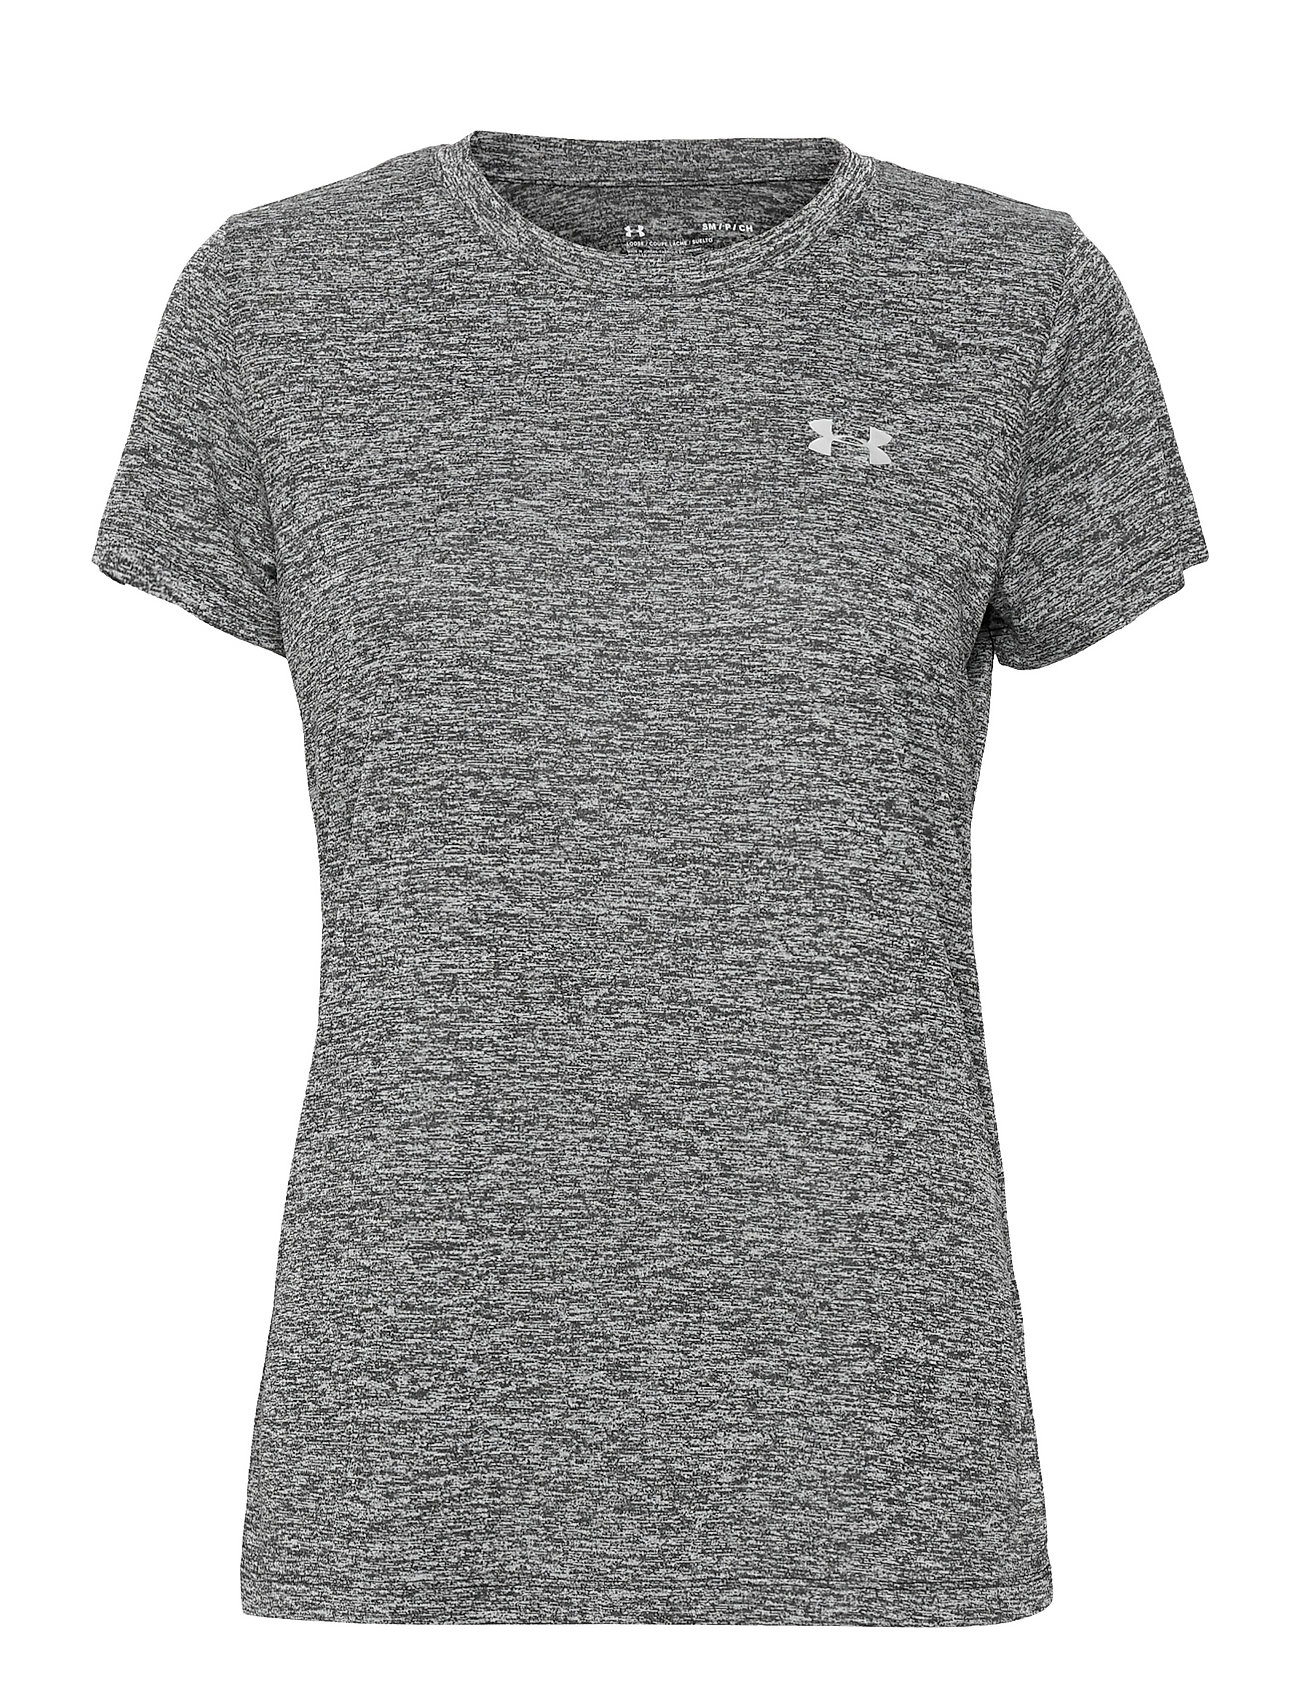 Tech Ssc - Twist Sport T-shirts & Tops Short-sleeved Grey Under Armour